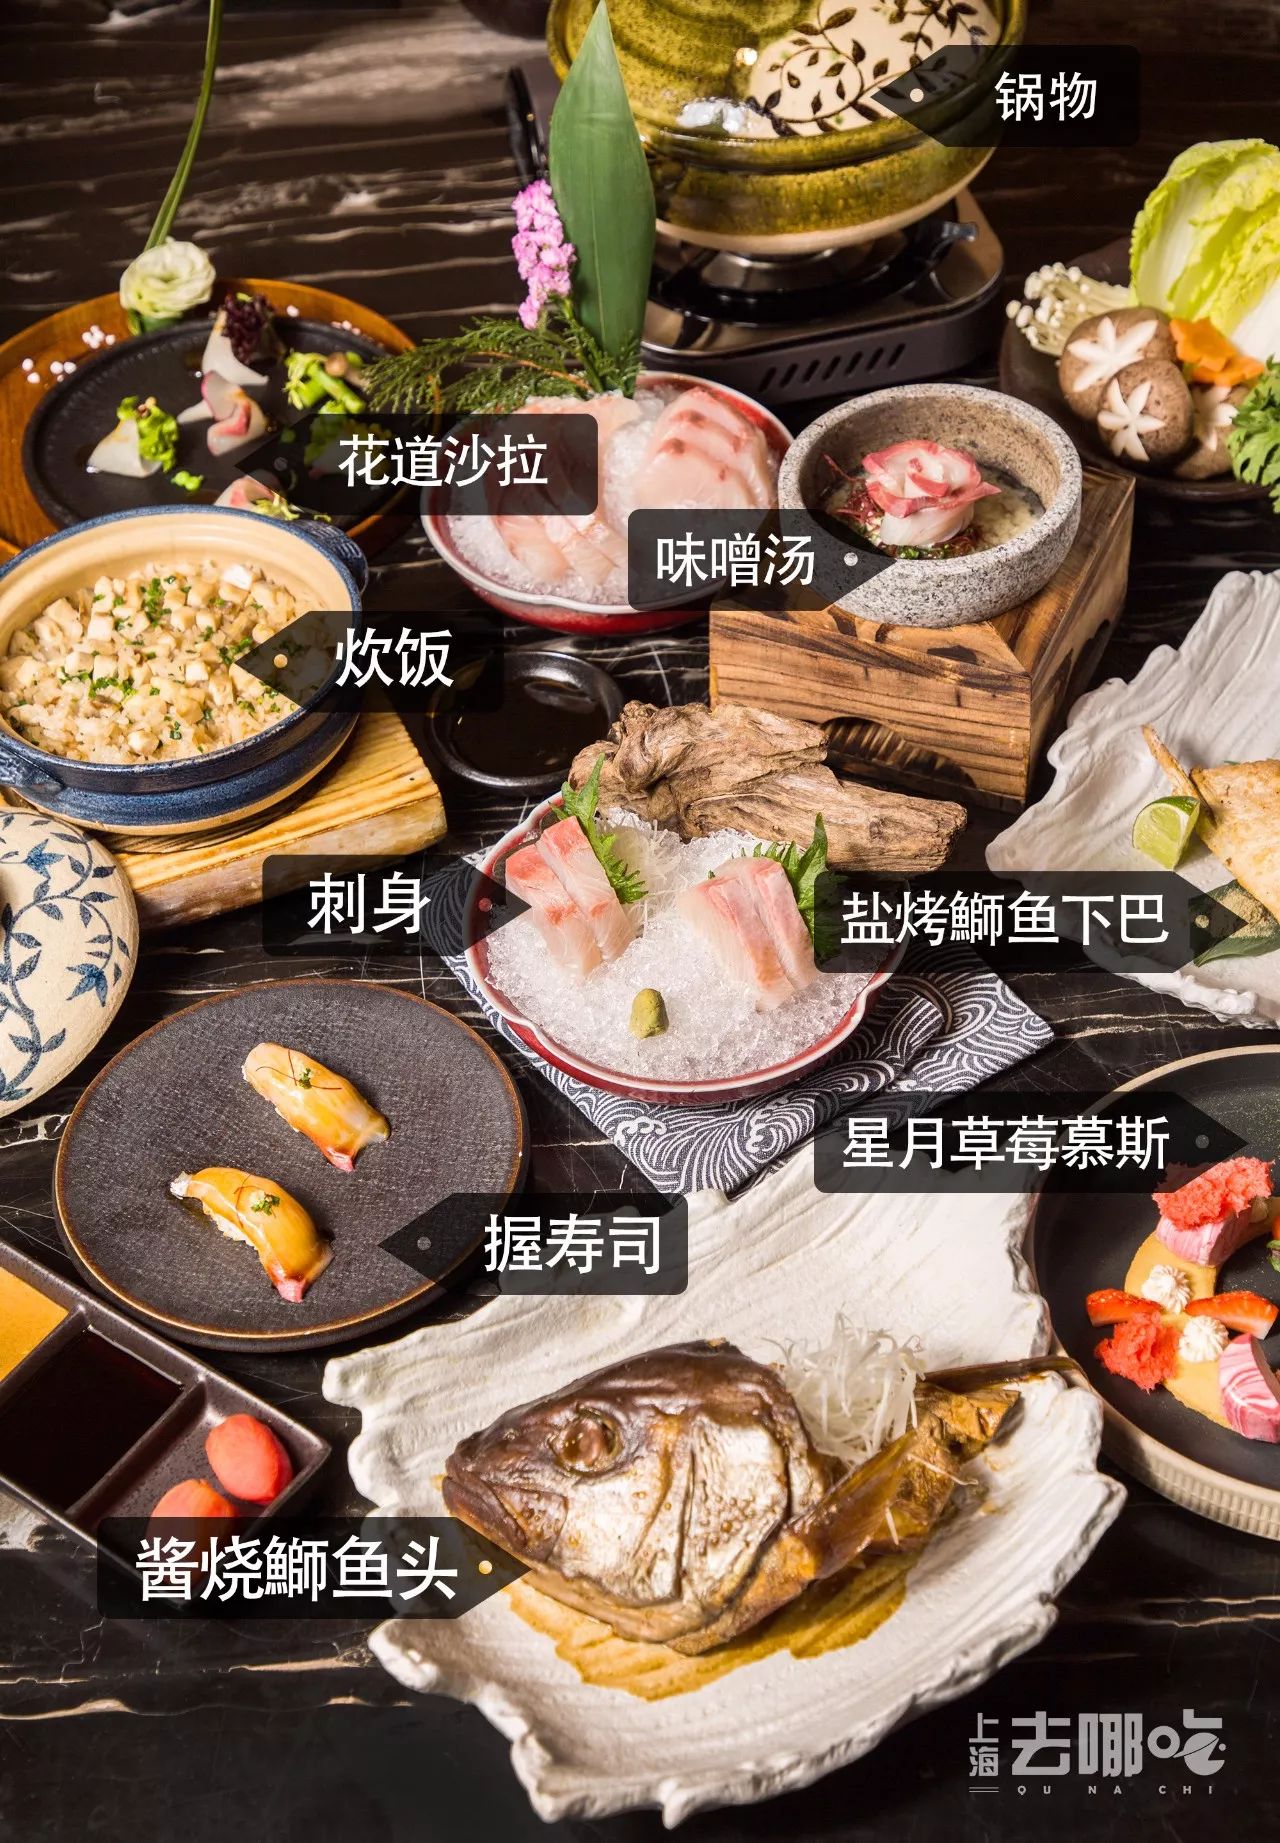 日本最吉利的魚 全上海只有這家店會做 上海去哪吃 微文庫